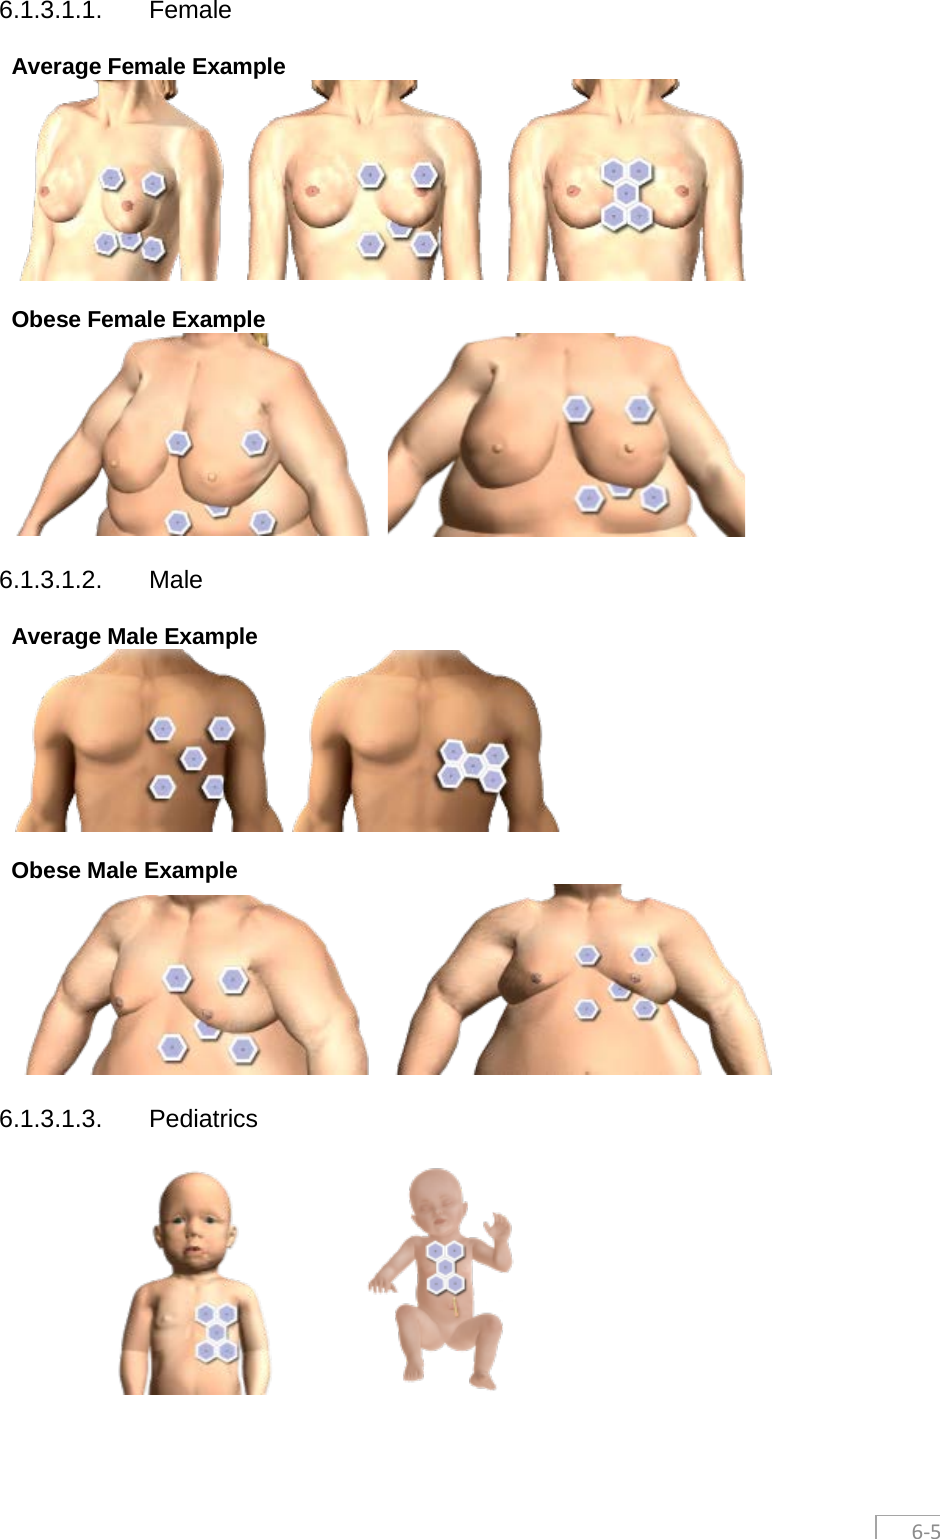  6-5 6.1.3.1.1. Female Average Female Example   Obese Female Example  6.1.3.1.2. Male Average Male Example   Obese Male Example  6.1.3.1.3. Pediatrics     